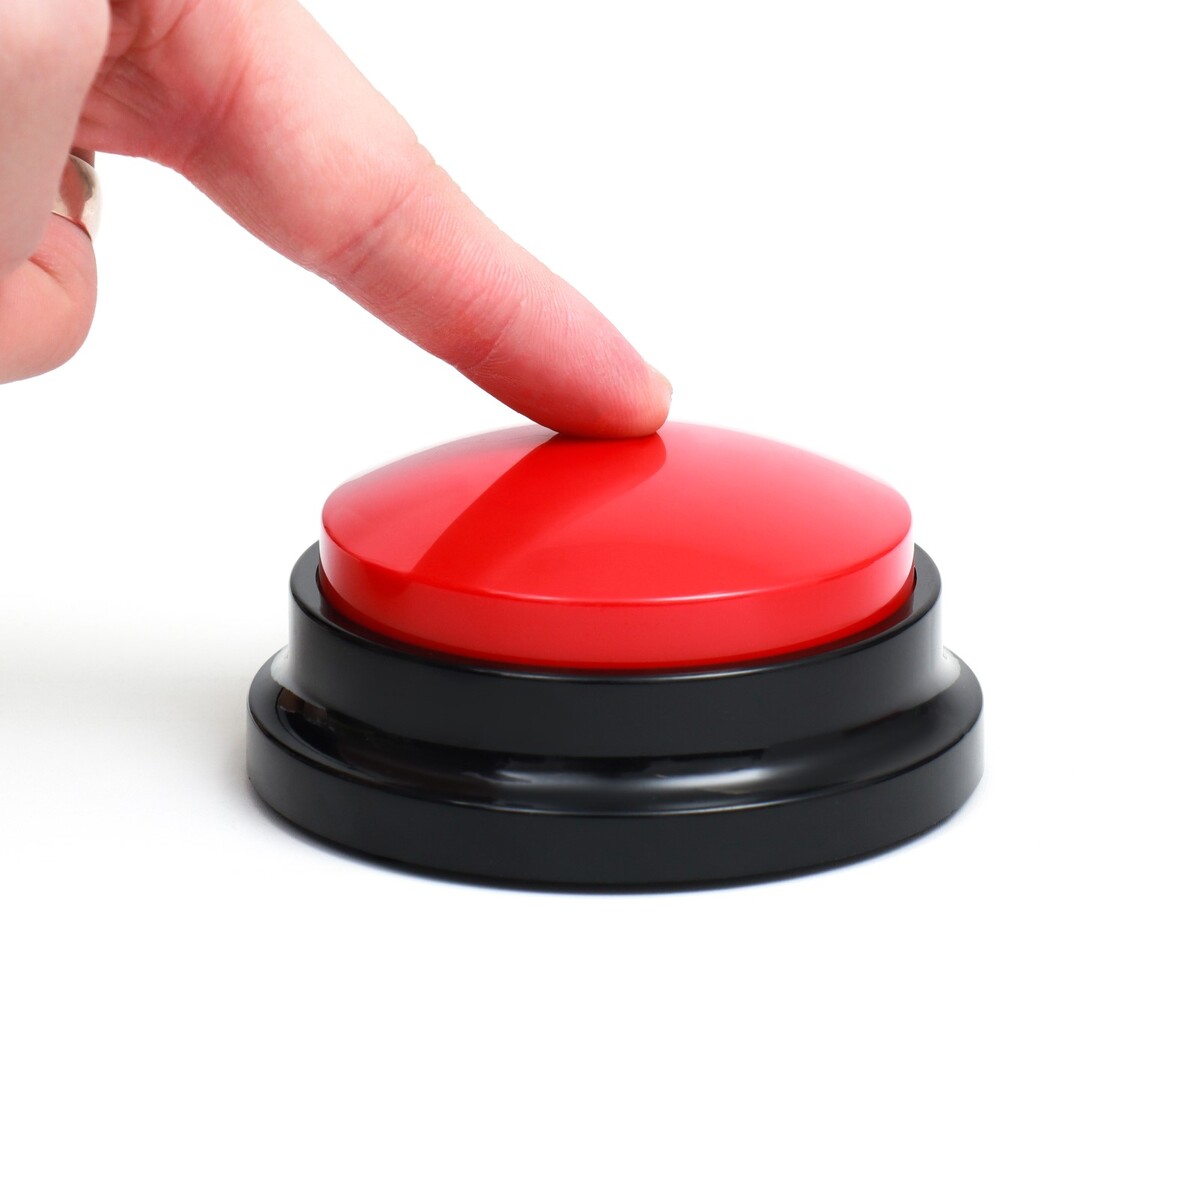 Звуковая кнопка - кликер для дрессировки животных, 9 х 9 х 5, см. красная футболка для животных xs дс 21 ог 32 см красная